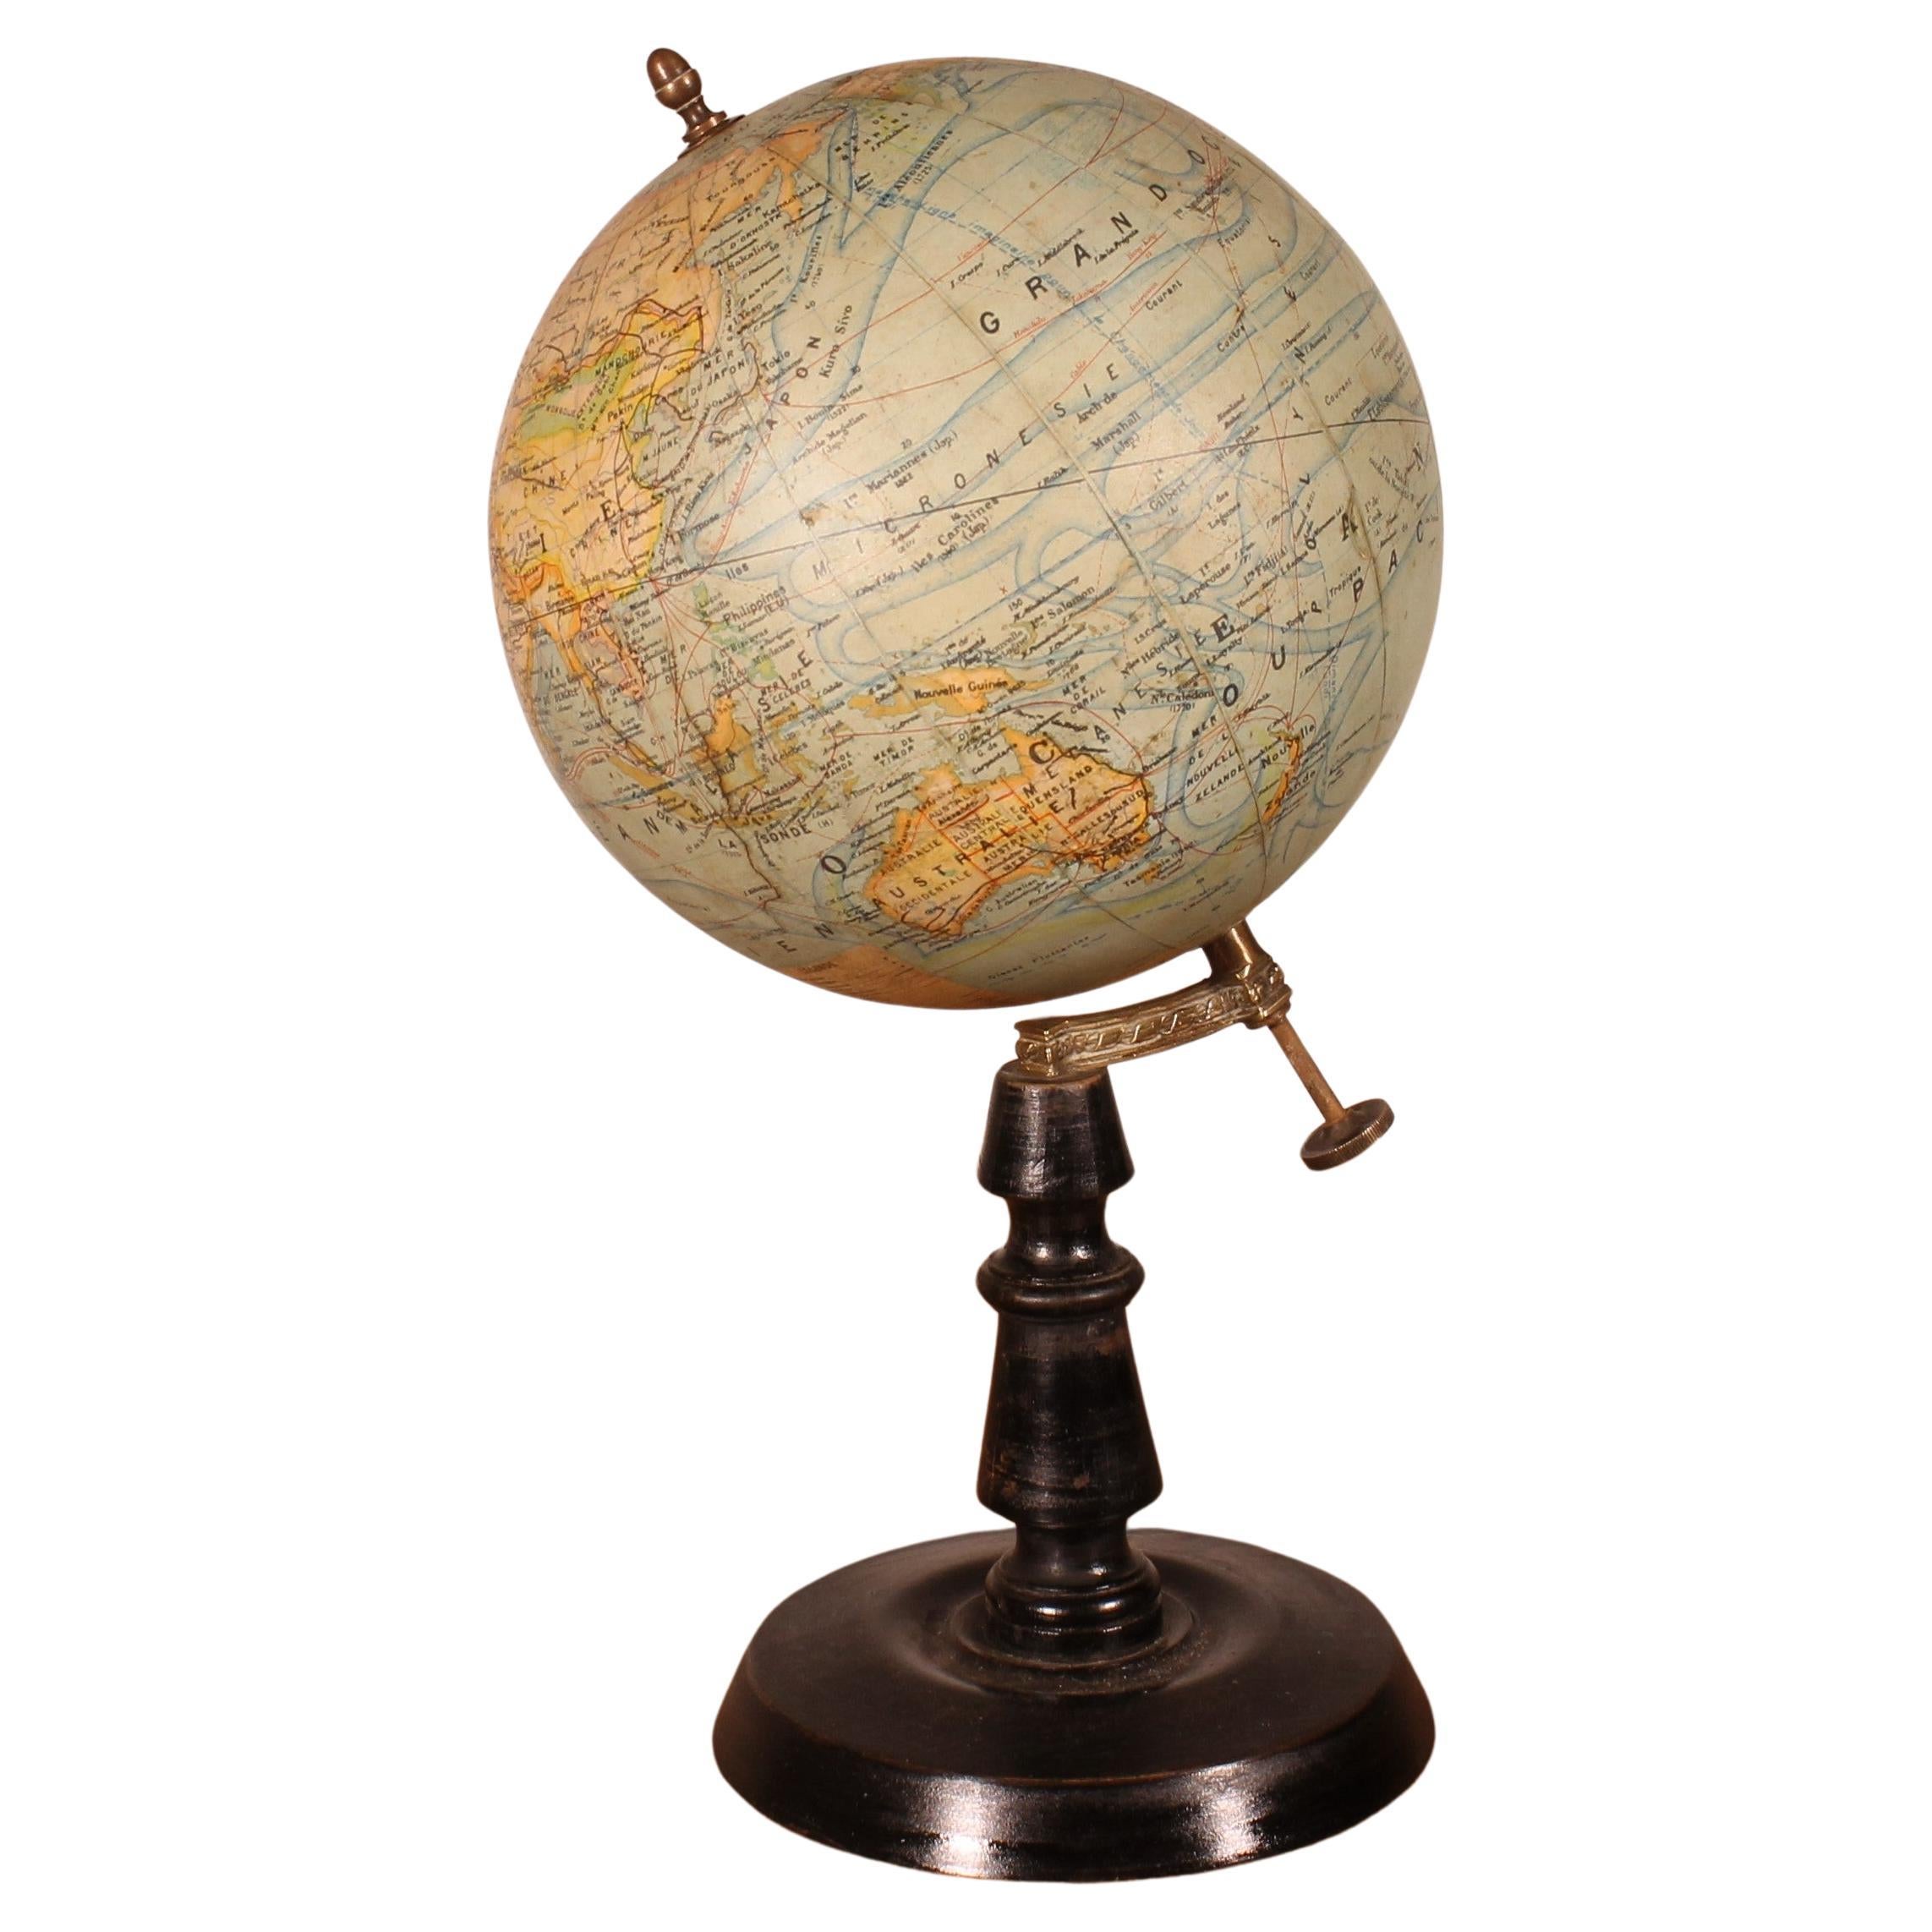 Petit globe terrestre de J.forest - Paris